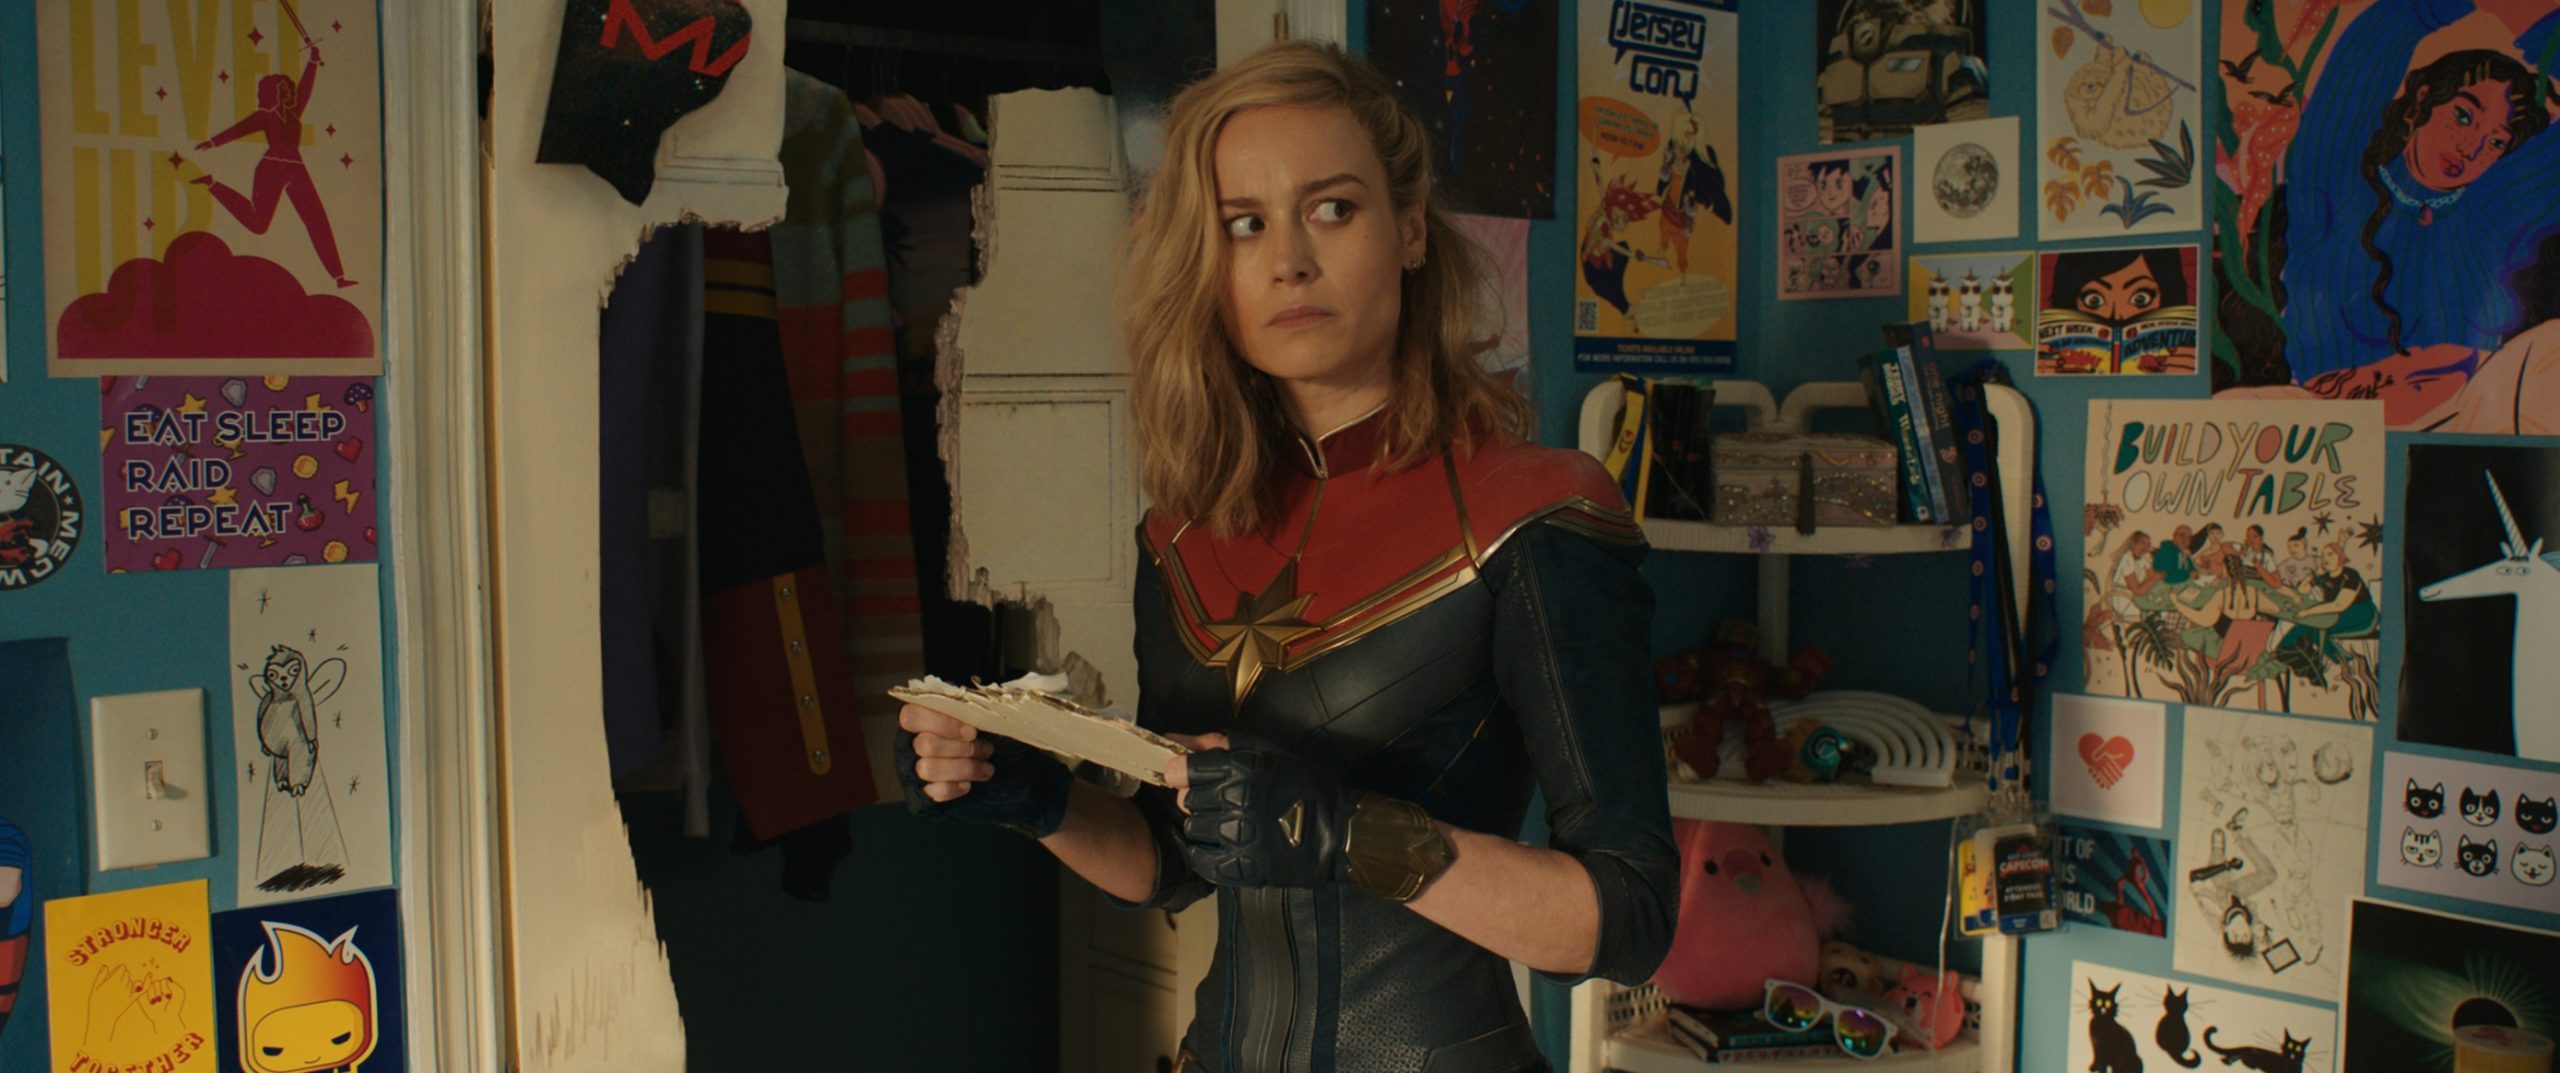 Marvel ima novi girl power film, no njegov trailer nas je razočarao